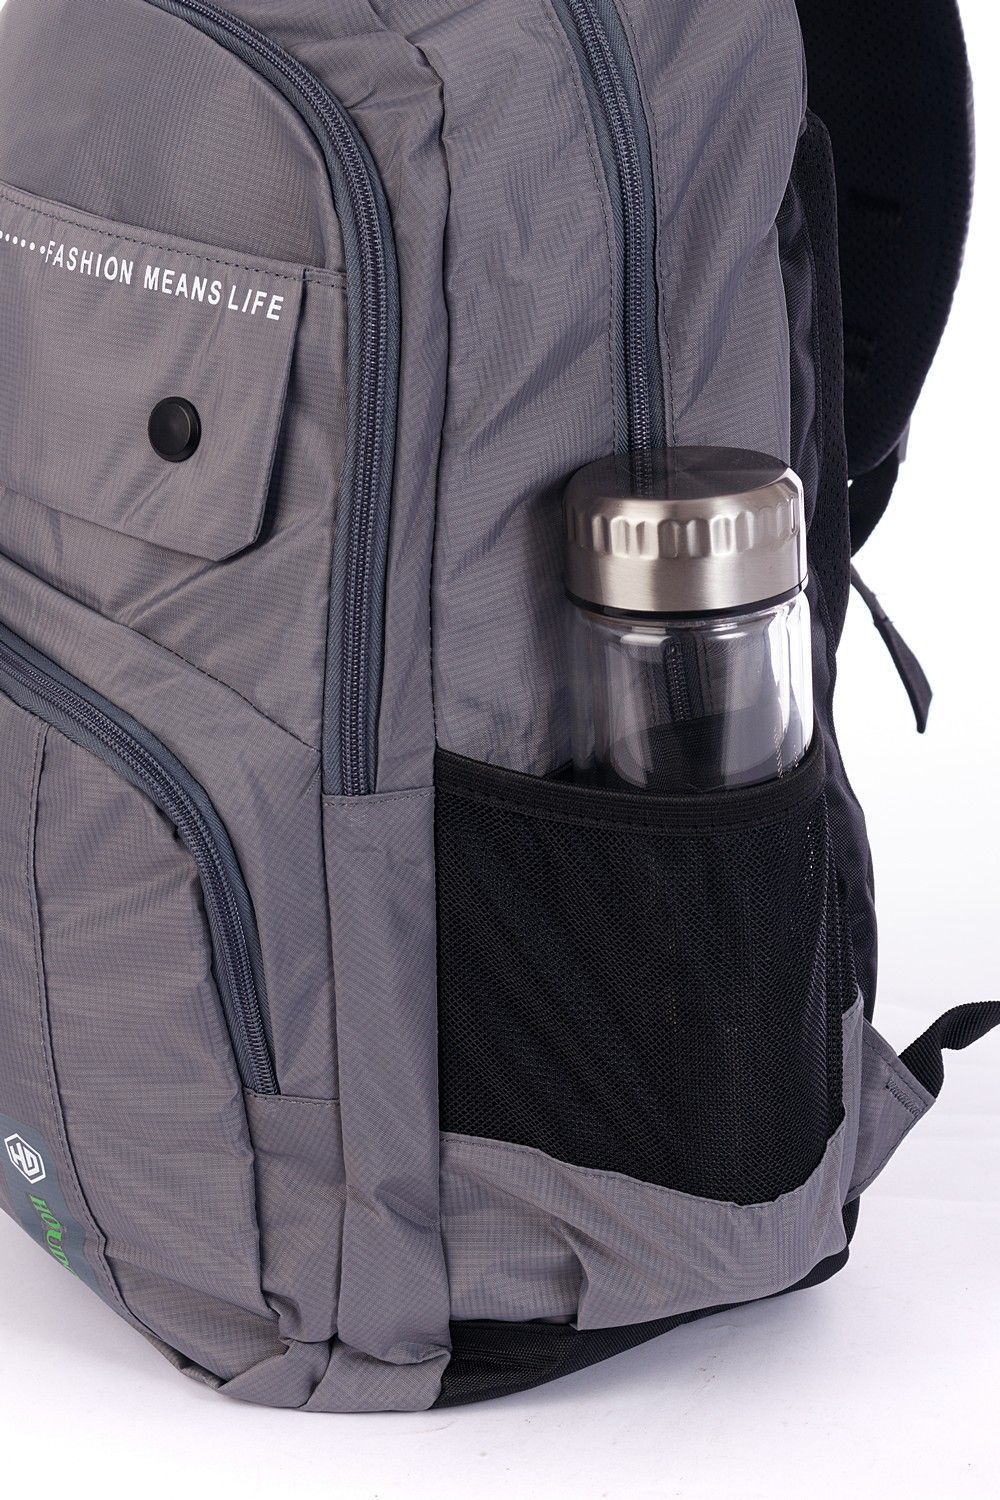 Рюкзак мужской городской, светло-серый однотонный, с широкими лямками, 21л